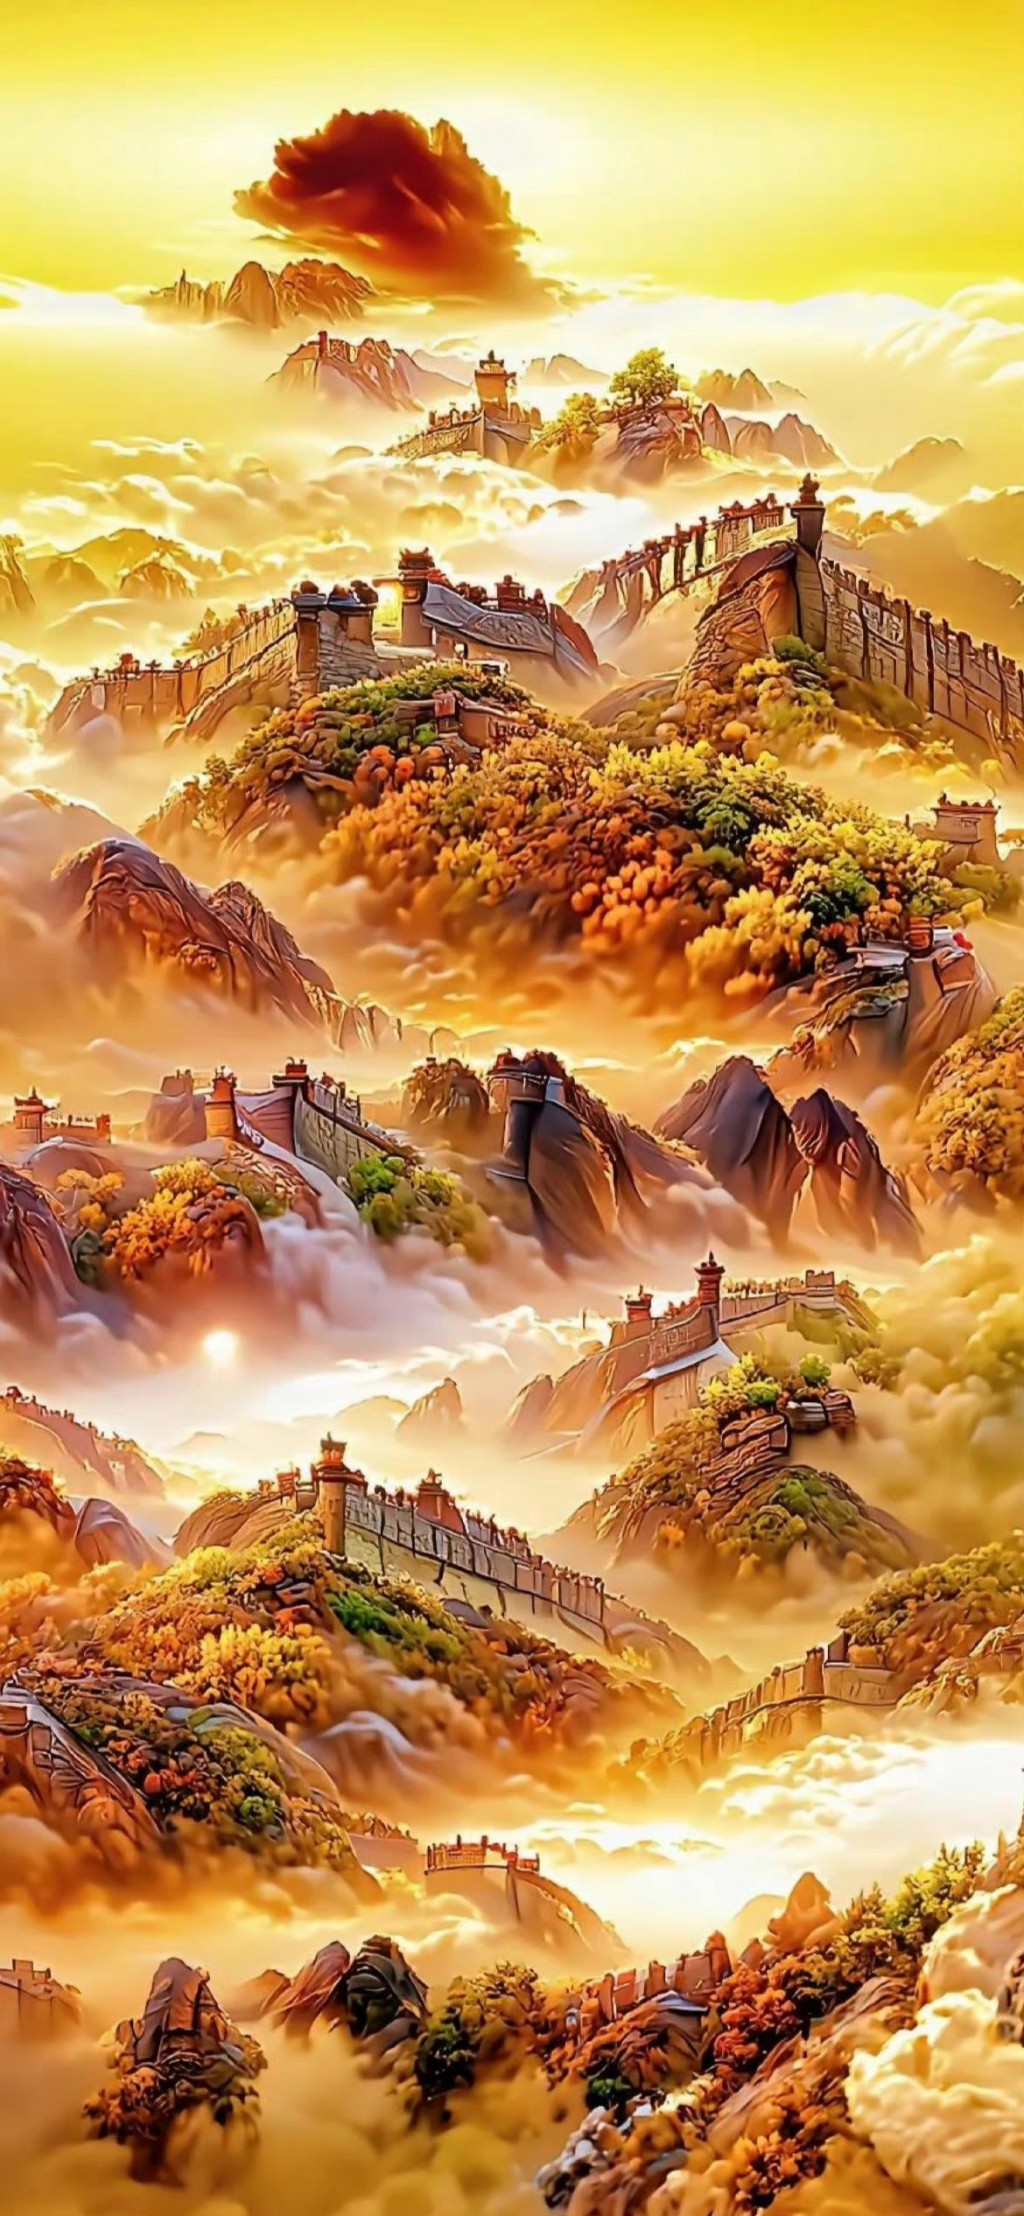 万里长城唯美彩绘风景插画手机壁纸